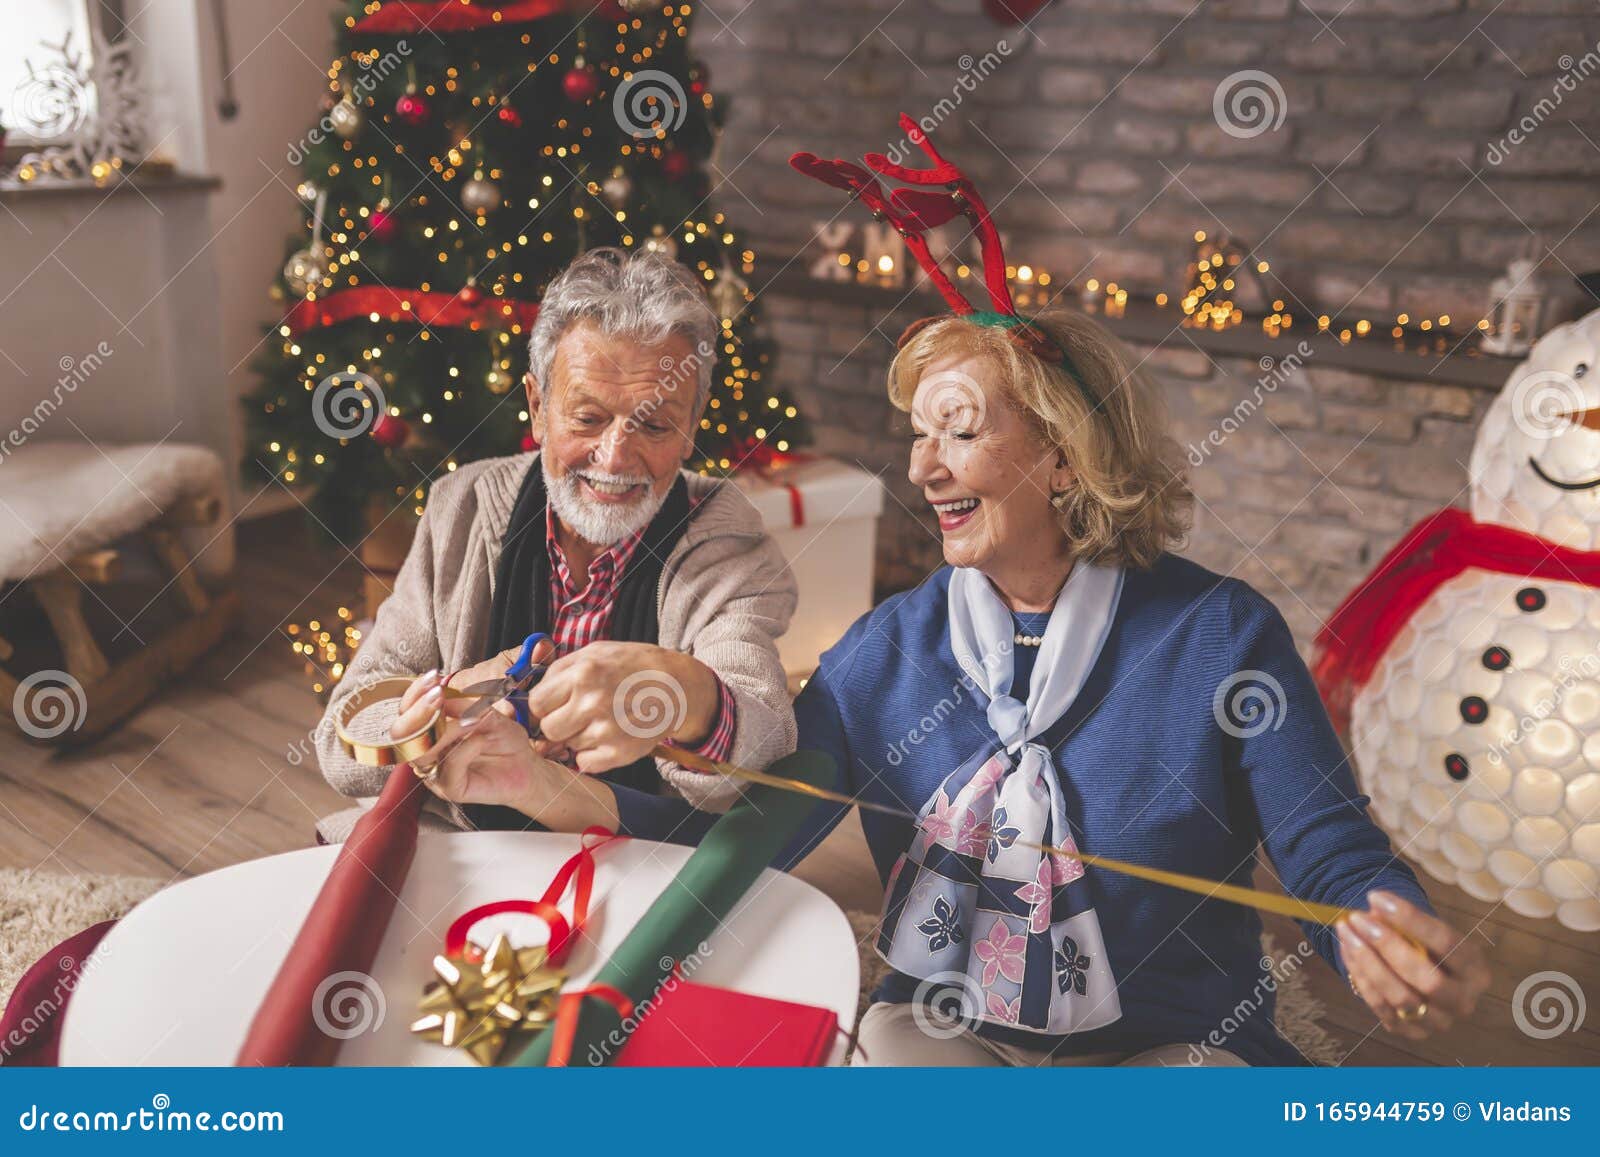 Stock Regali Di Natale.Coppie Di Anziani Che Avvolgono I Regali Di Natale Immagine Stock Immagine Di Dicembre Sposato 165944759